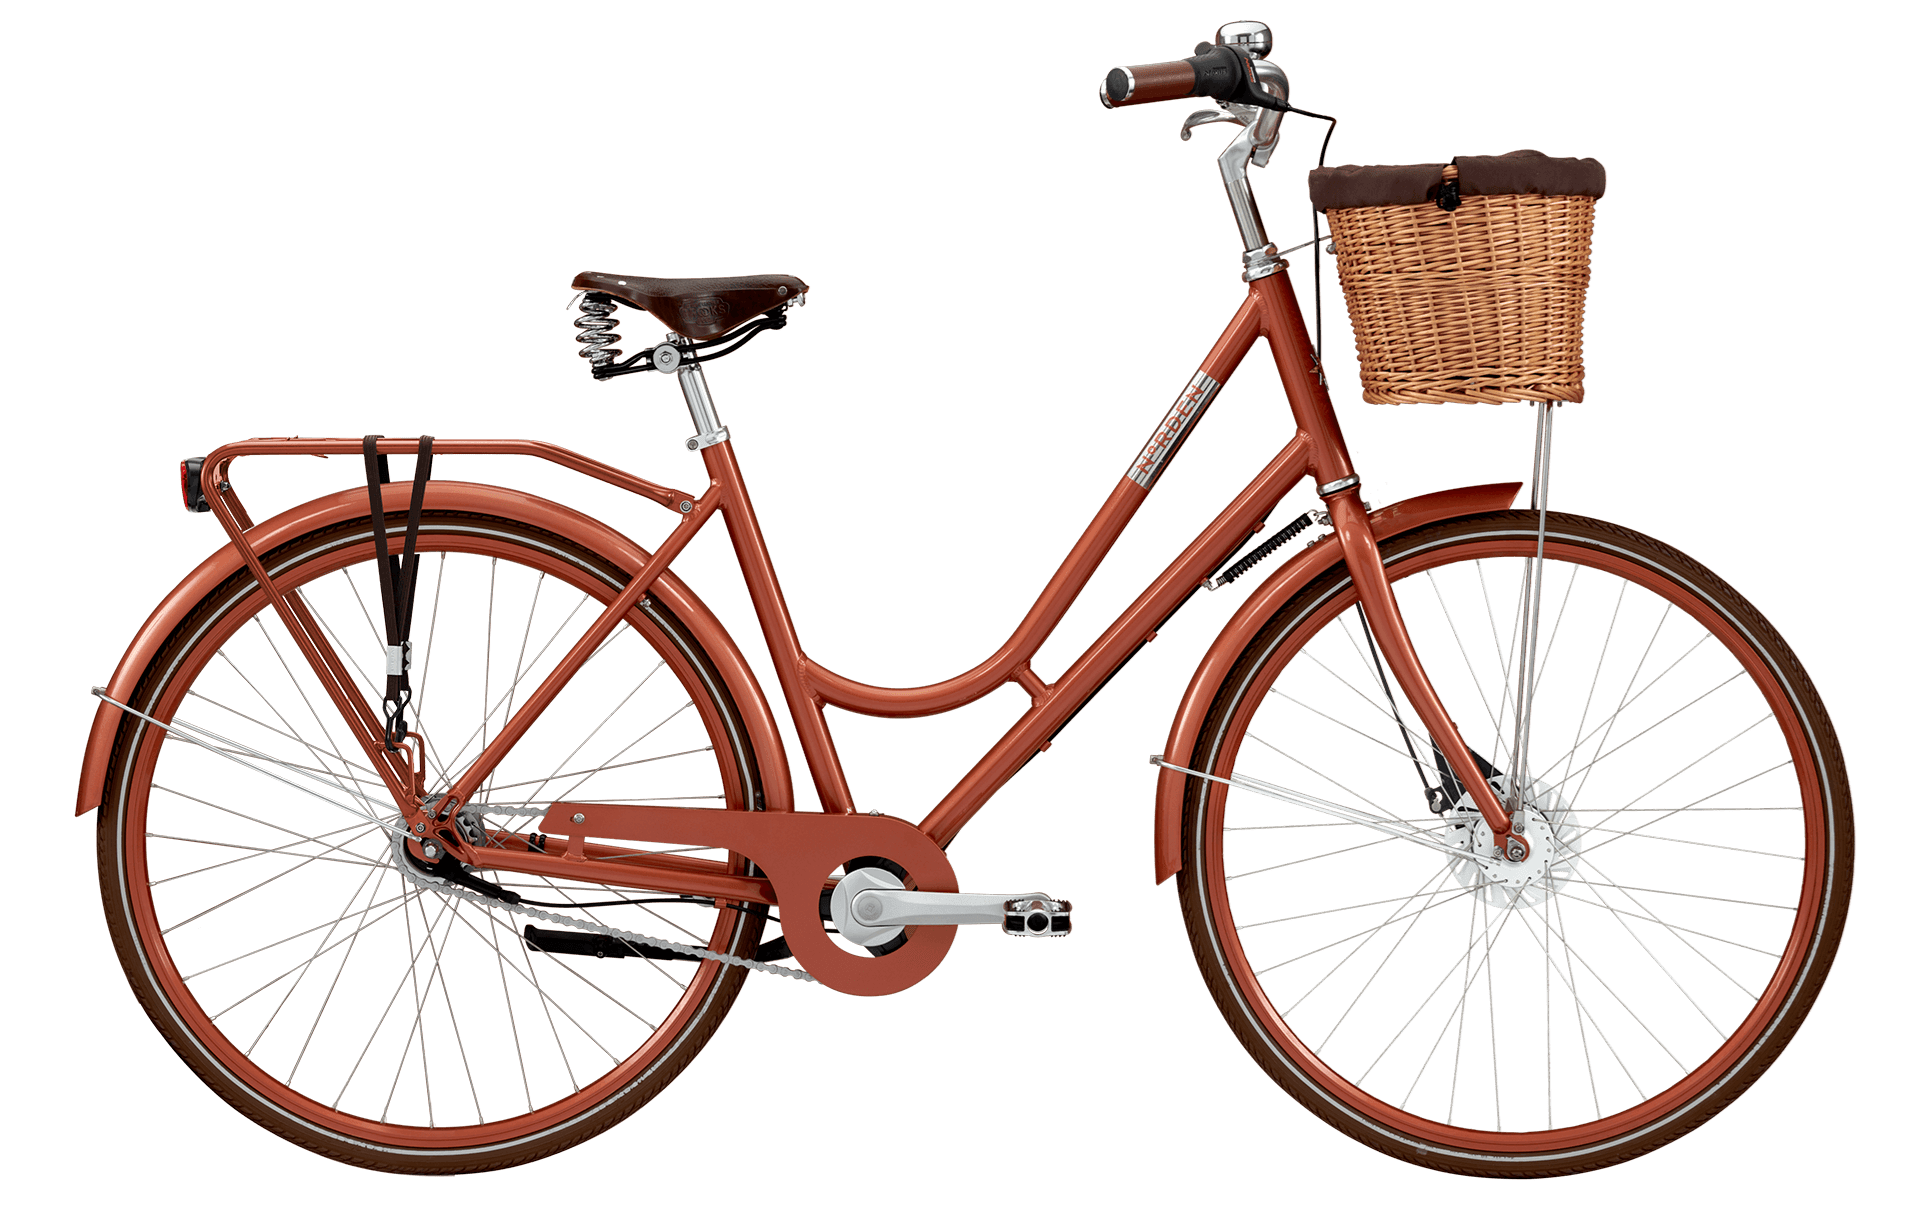 Piping koste Mispend Norden damecykler & herrecykler → Køb flotte cykler i lækker kvalitet!